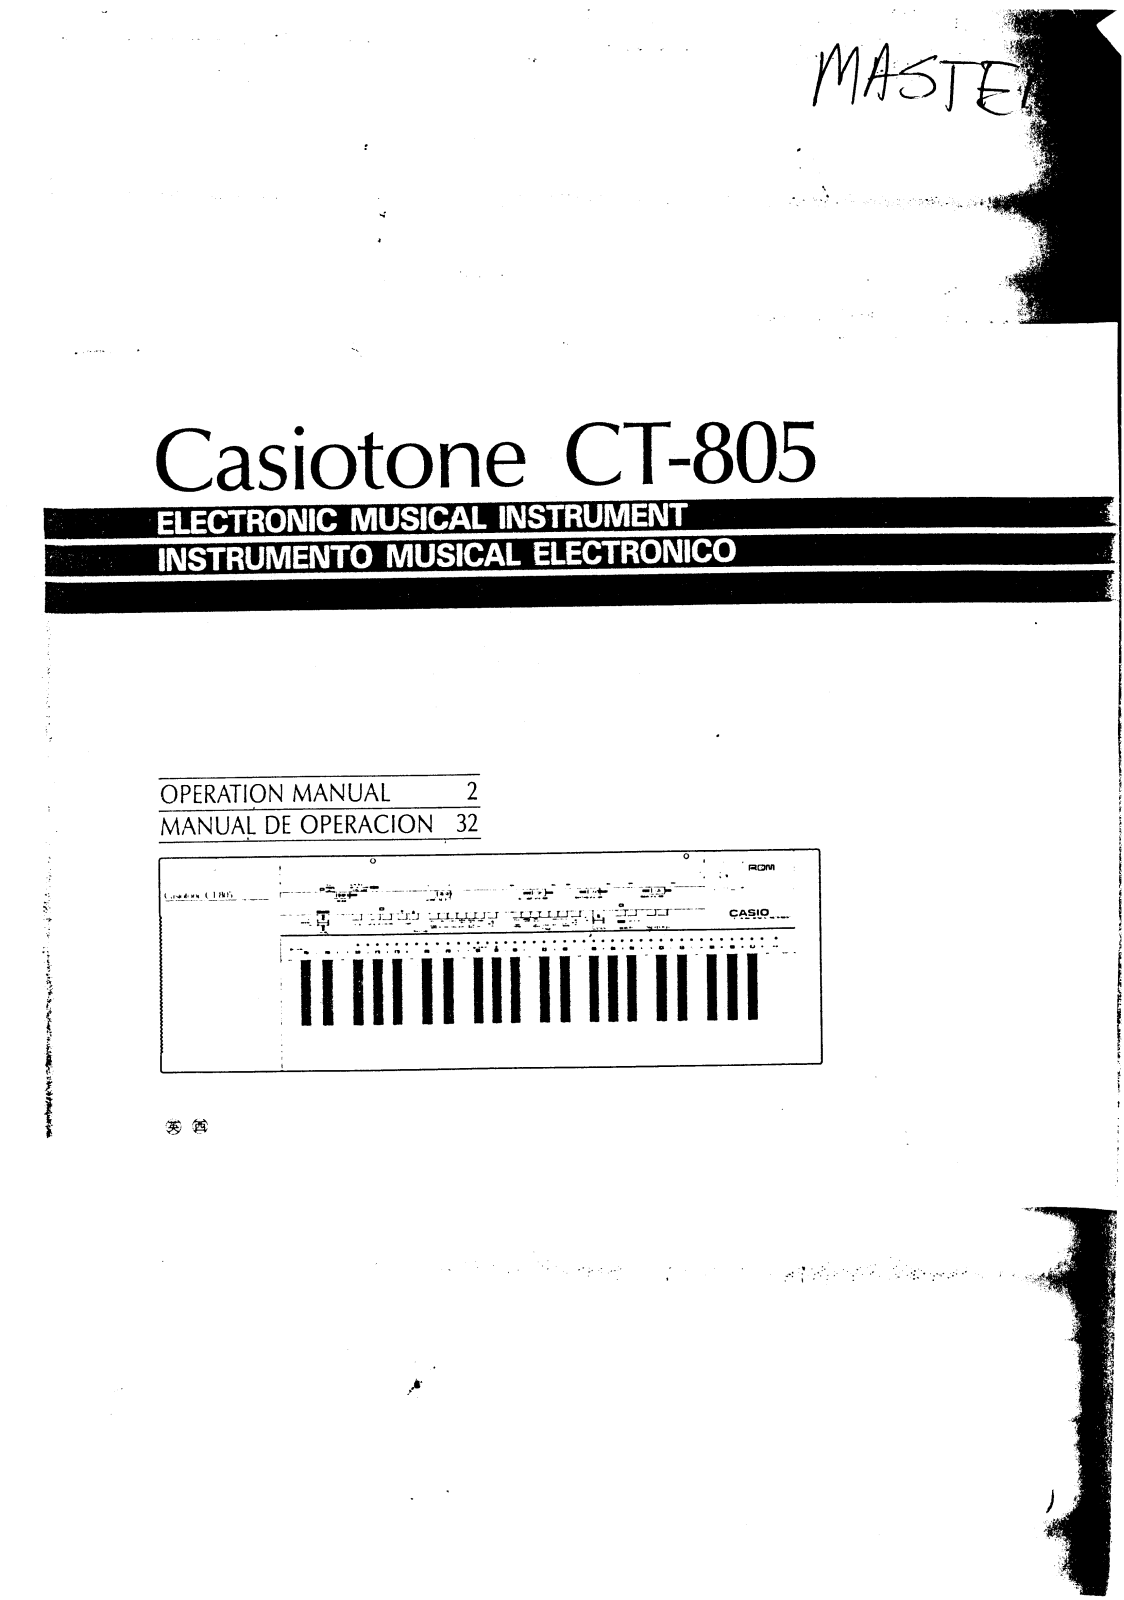 Casio CT-805 User Manual